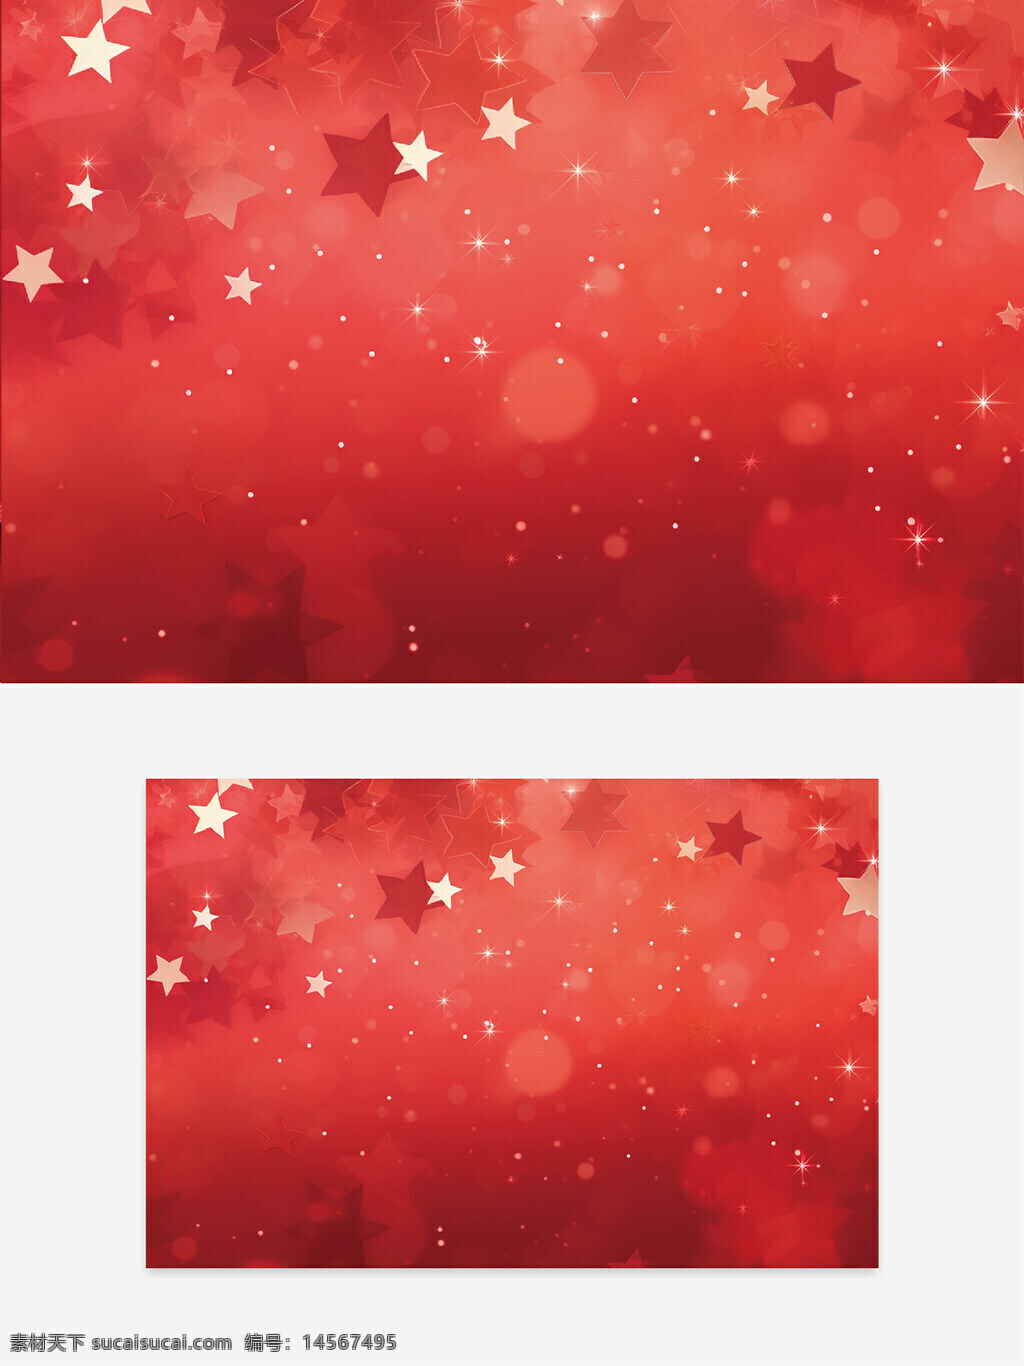 创意红色背景 背景设计 创意红色 红色星星 星星设计 汇聚设计